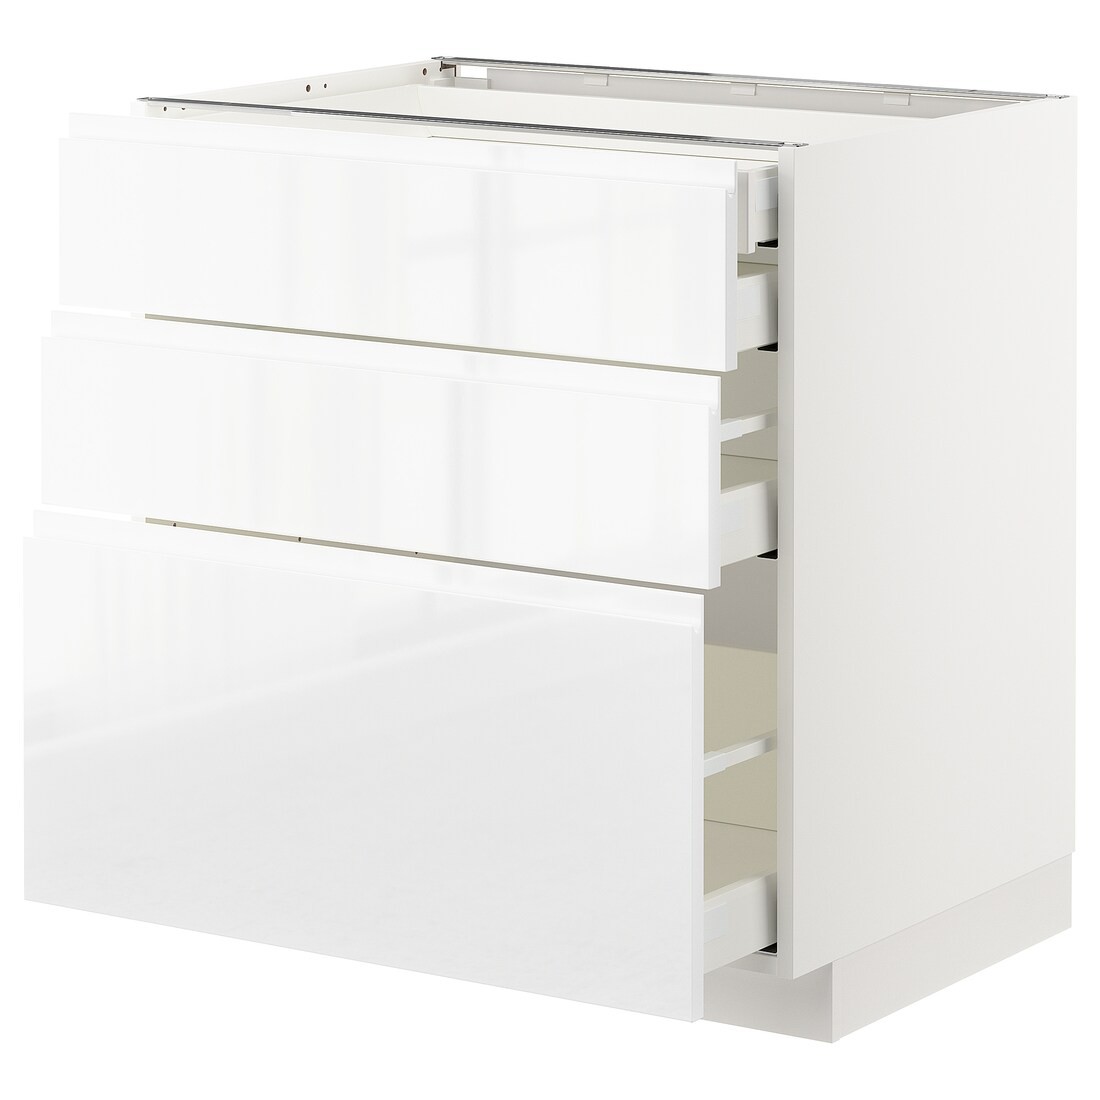 IKEA METOD МЕТОД / MAXIMERA МАКСИМЕРА Напольный шкаф с ящиками, белый / Voxtorp глянцевый / белый, 80x60 см 79254287 792.542.87